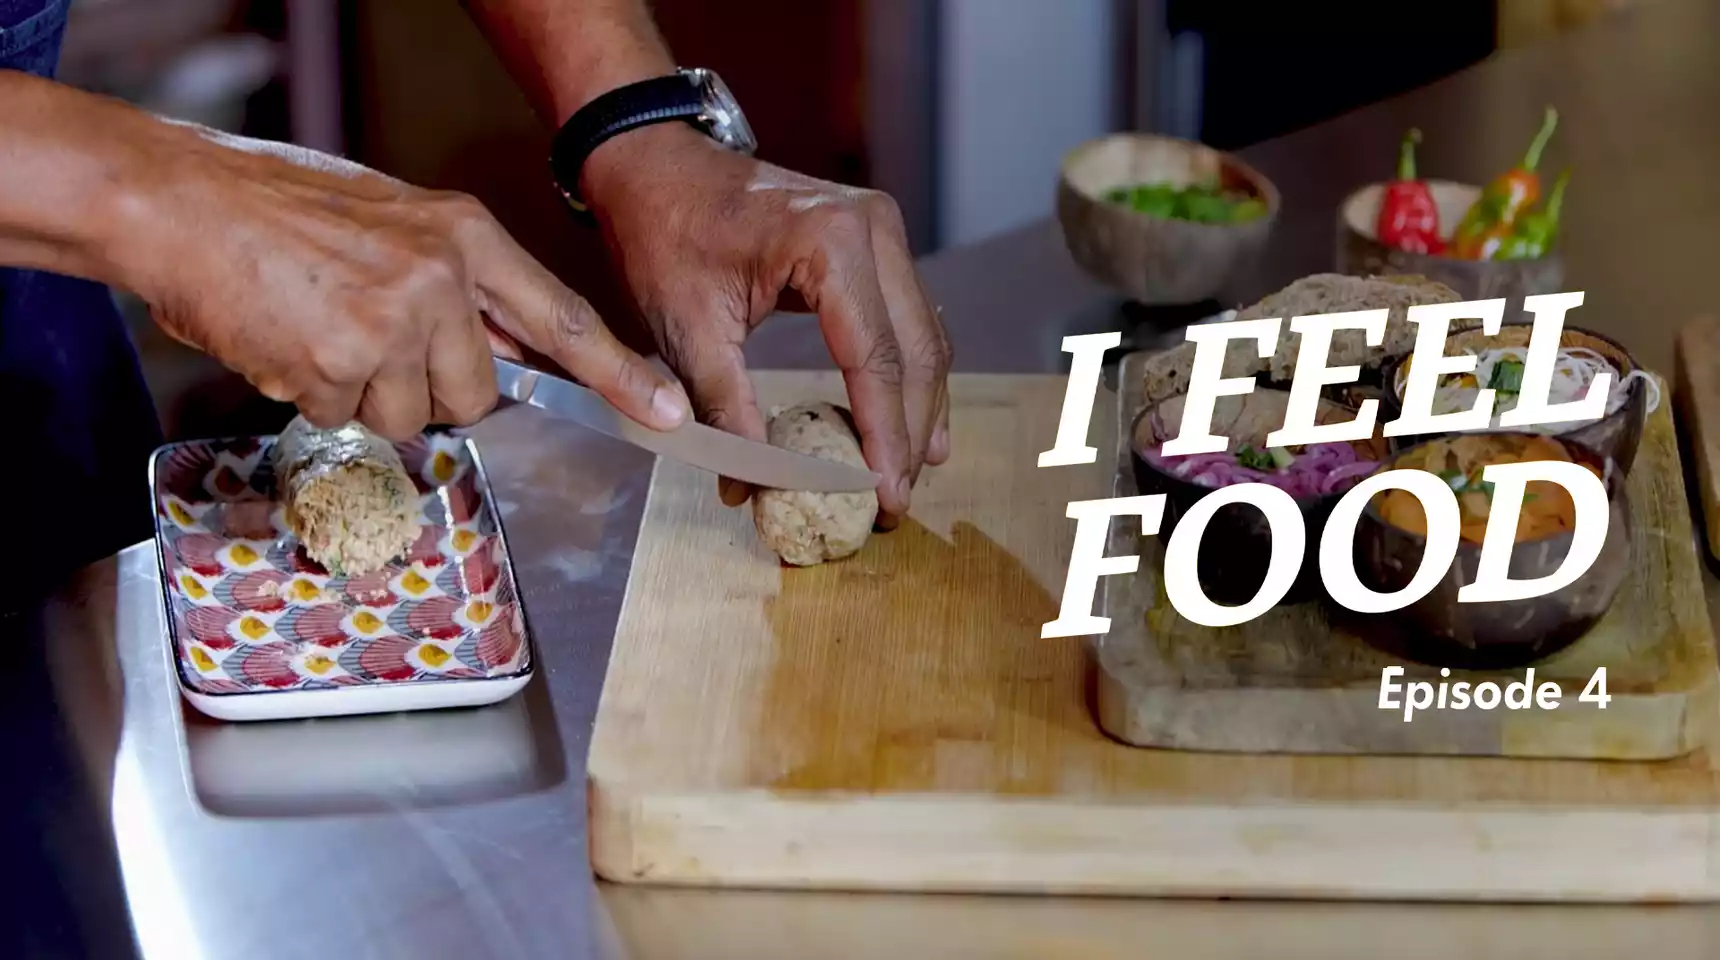 "I FEEL FOOD", le nouveau programme culinaire de Canal+ Caraïbes. Coup d'envoi ce 25 décembre !